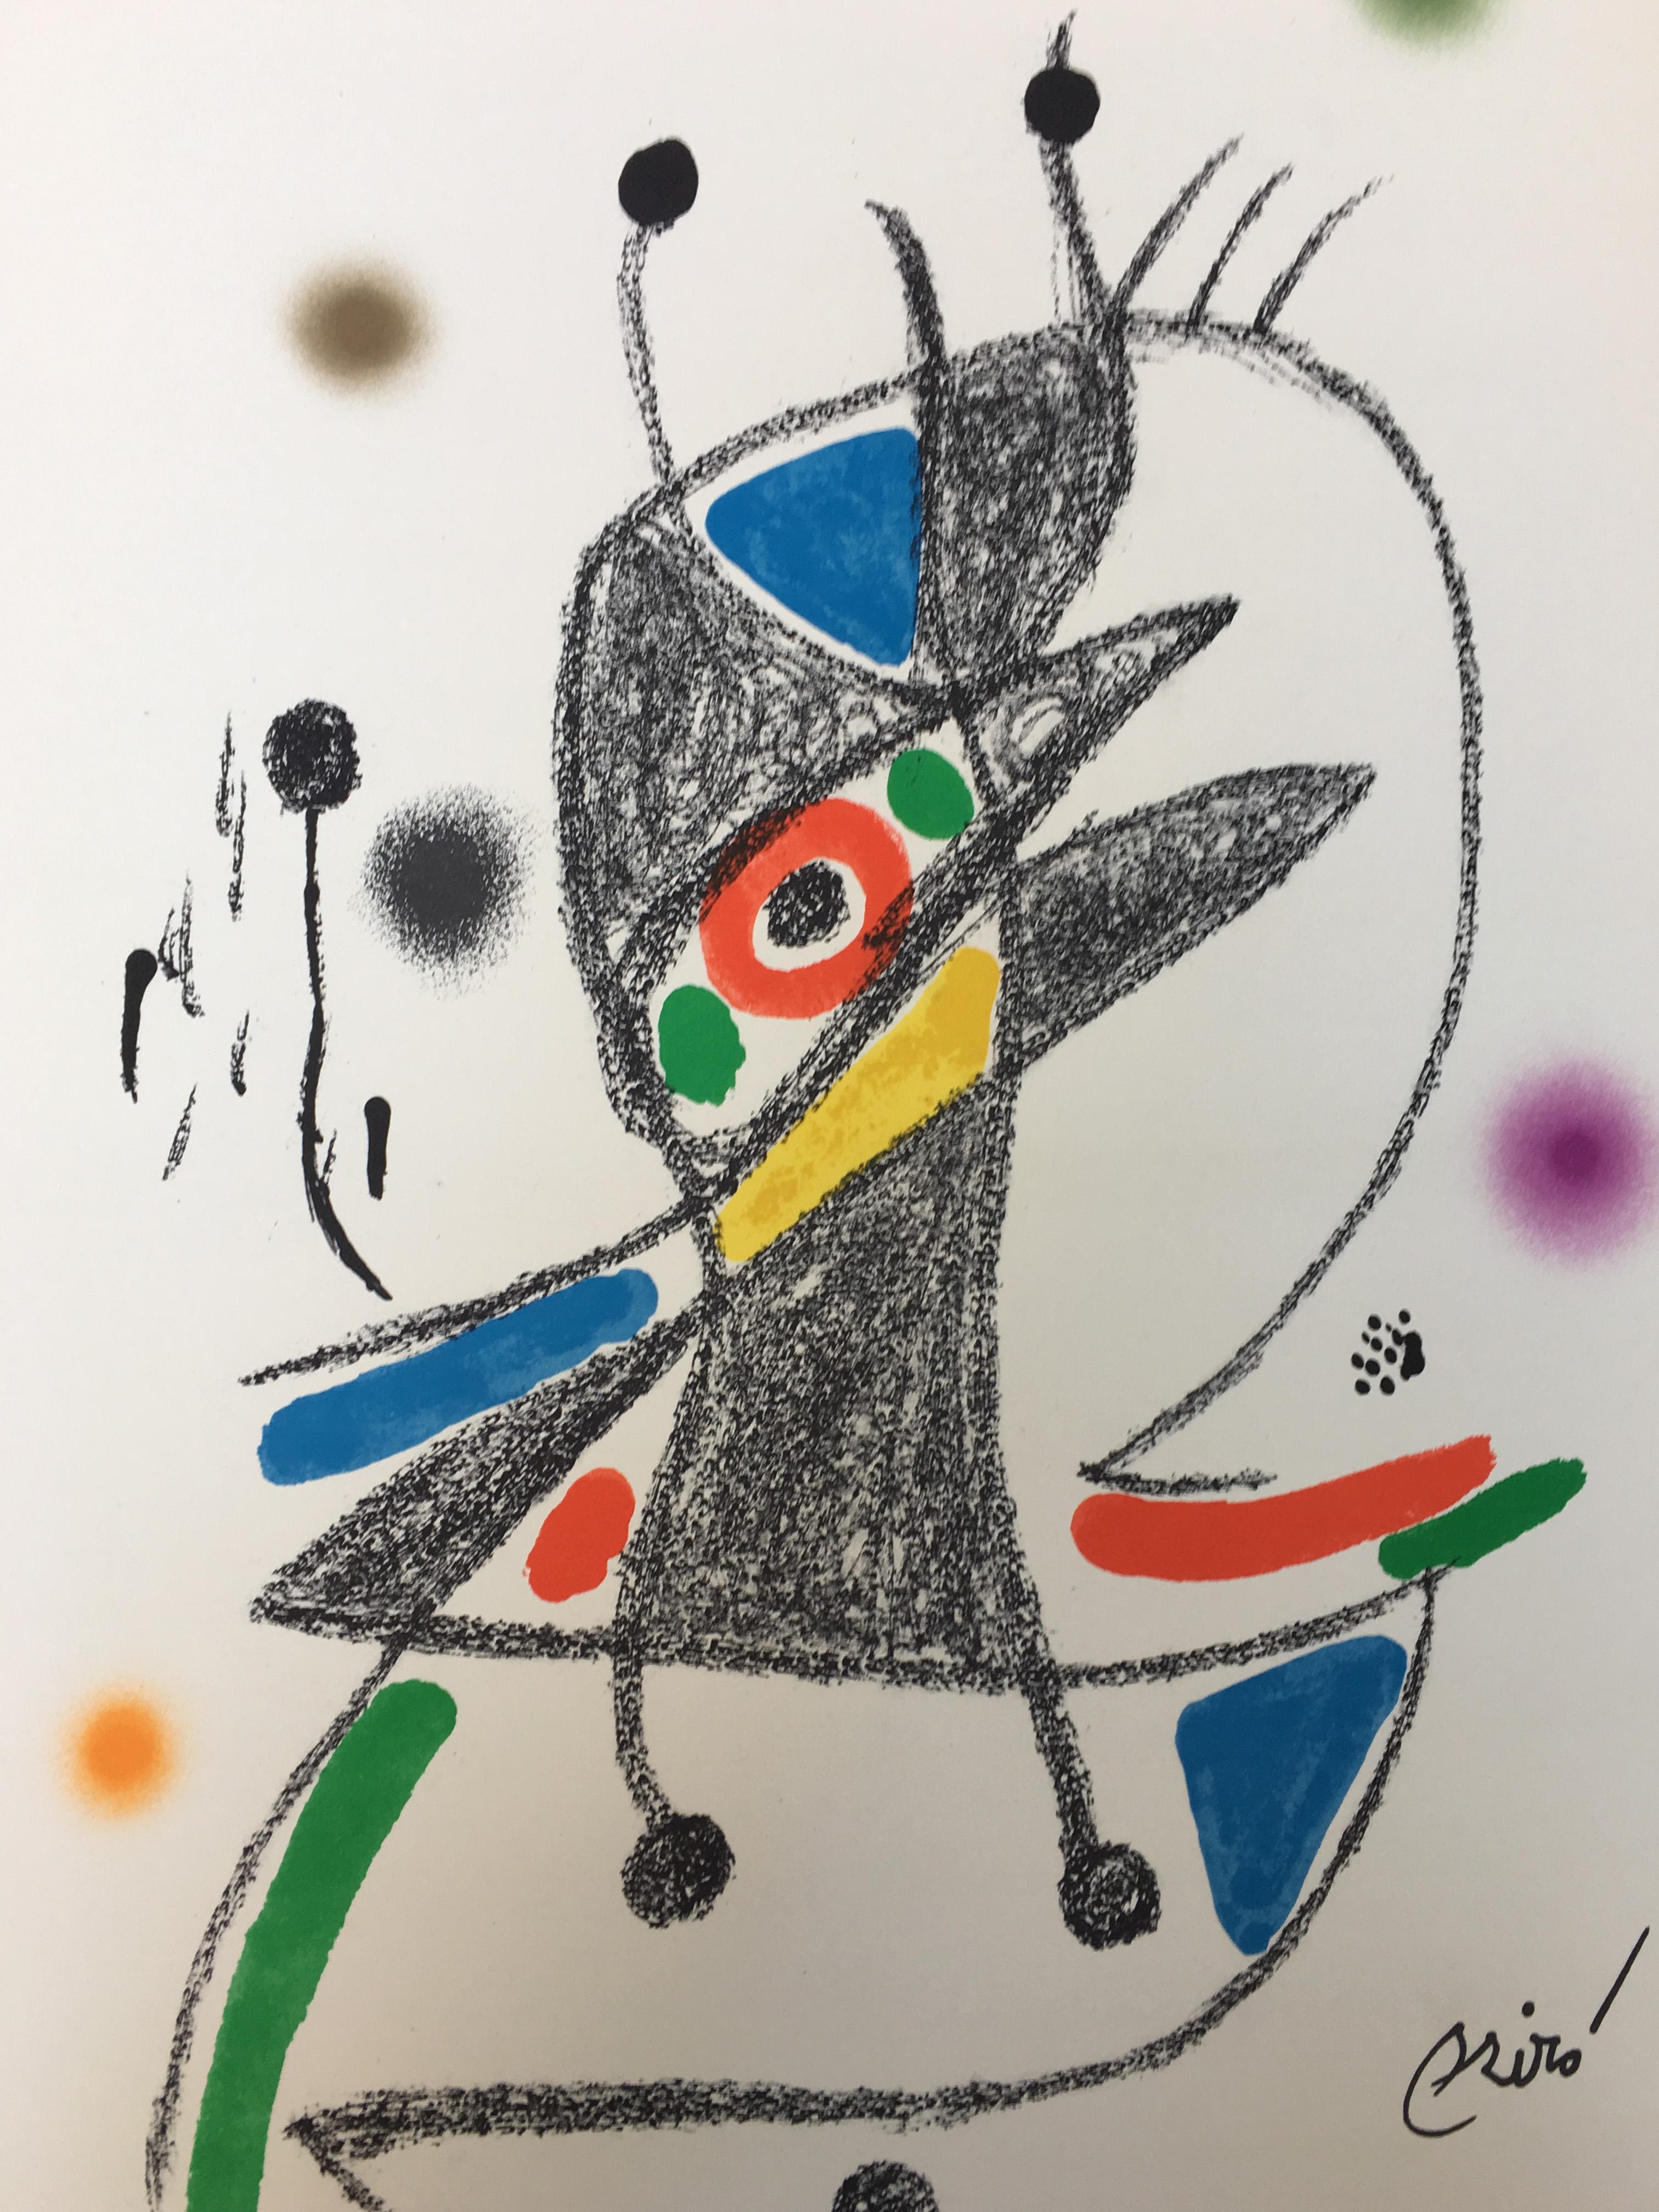 Joan Miró Abstract Print - Maravillas con Variaciones Acrosticas 5